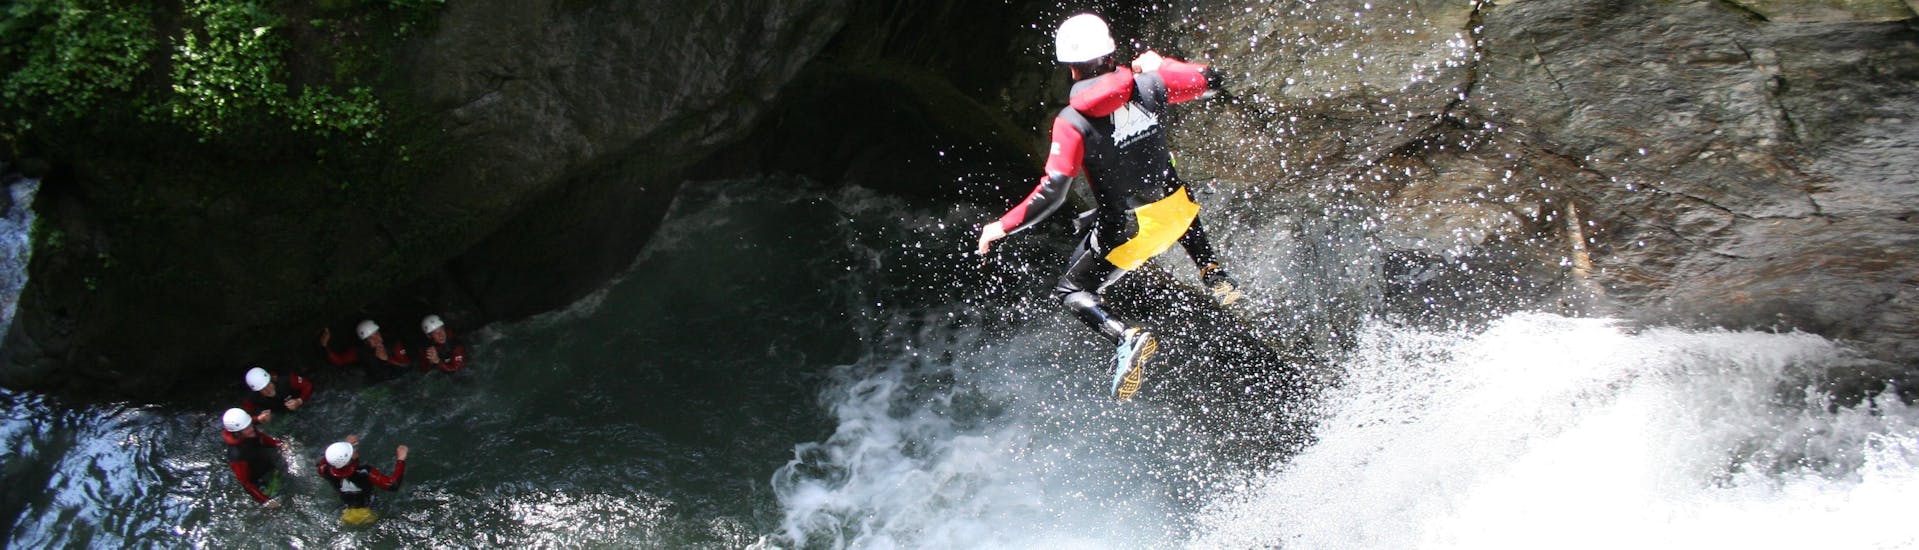 Ein Teilnehmer springt beim Extreme Canyoning in der Auerklamm im Ötztal mit CanKick Ötztal in einen natürliches Becken.